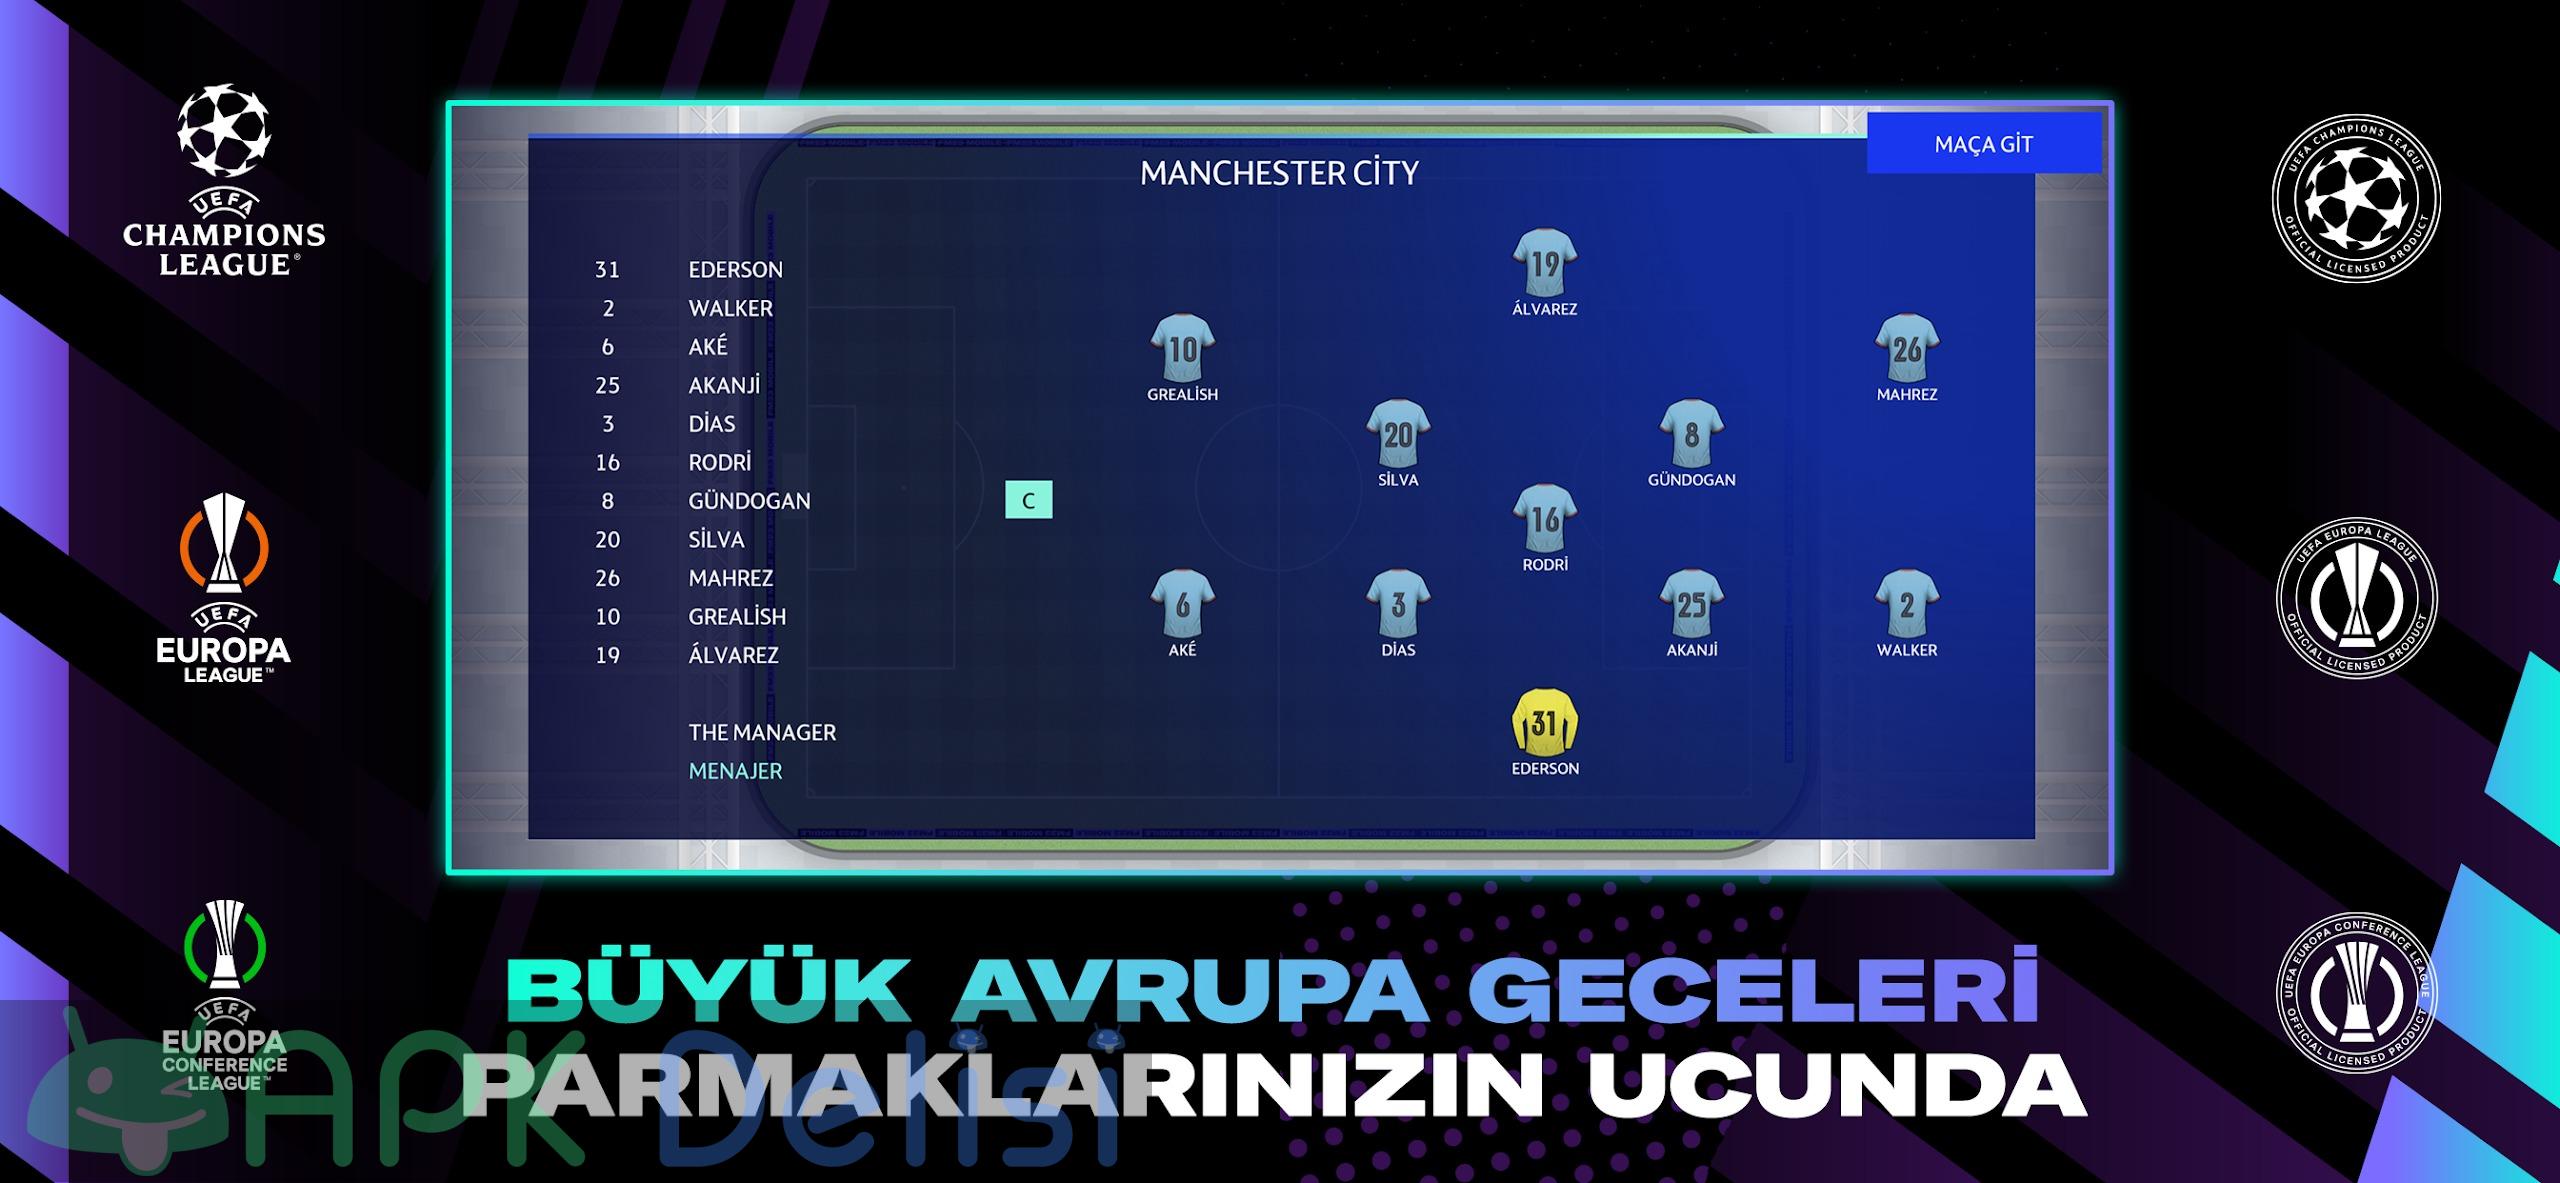 Football Manager 2023 Mobile v14.4.0 FULL APK — TAM SÜRÜM 5